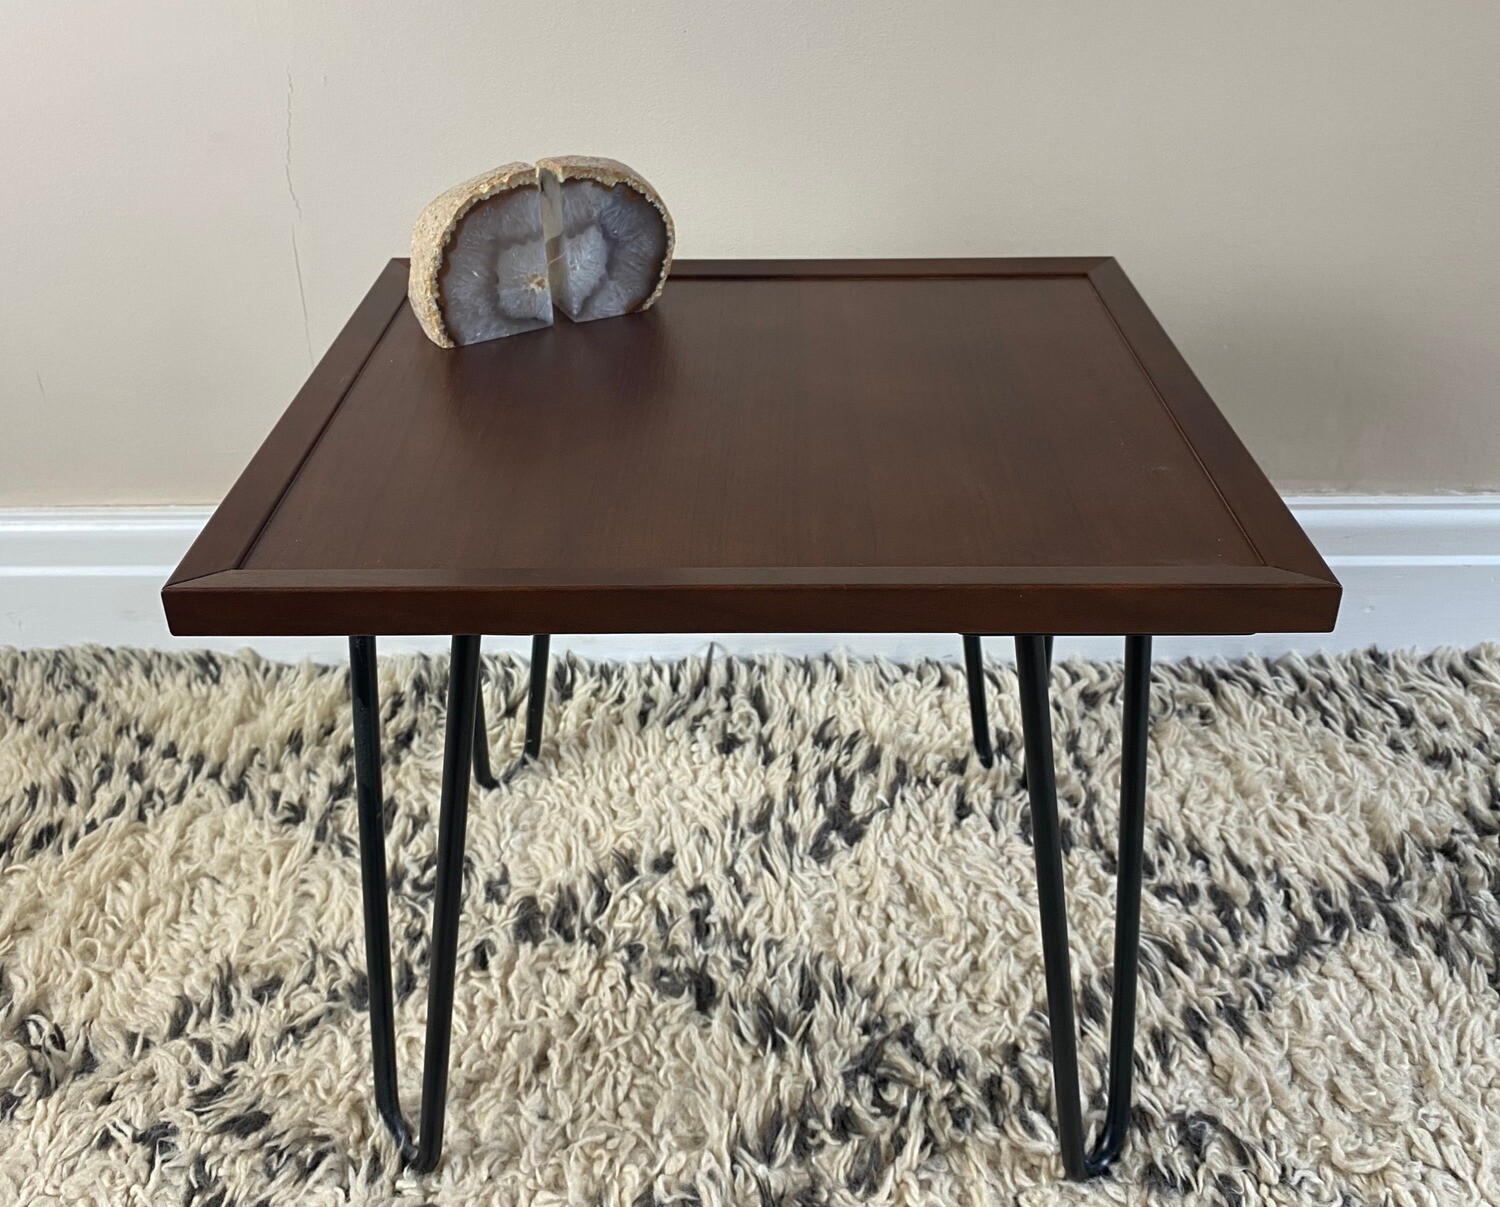 Warm walnut veneer 'Edie' side table with frame detail and steel hairpin legs